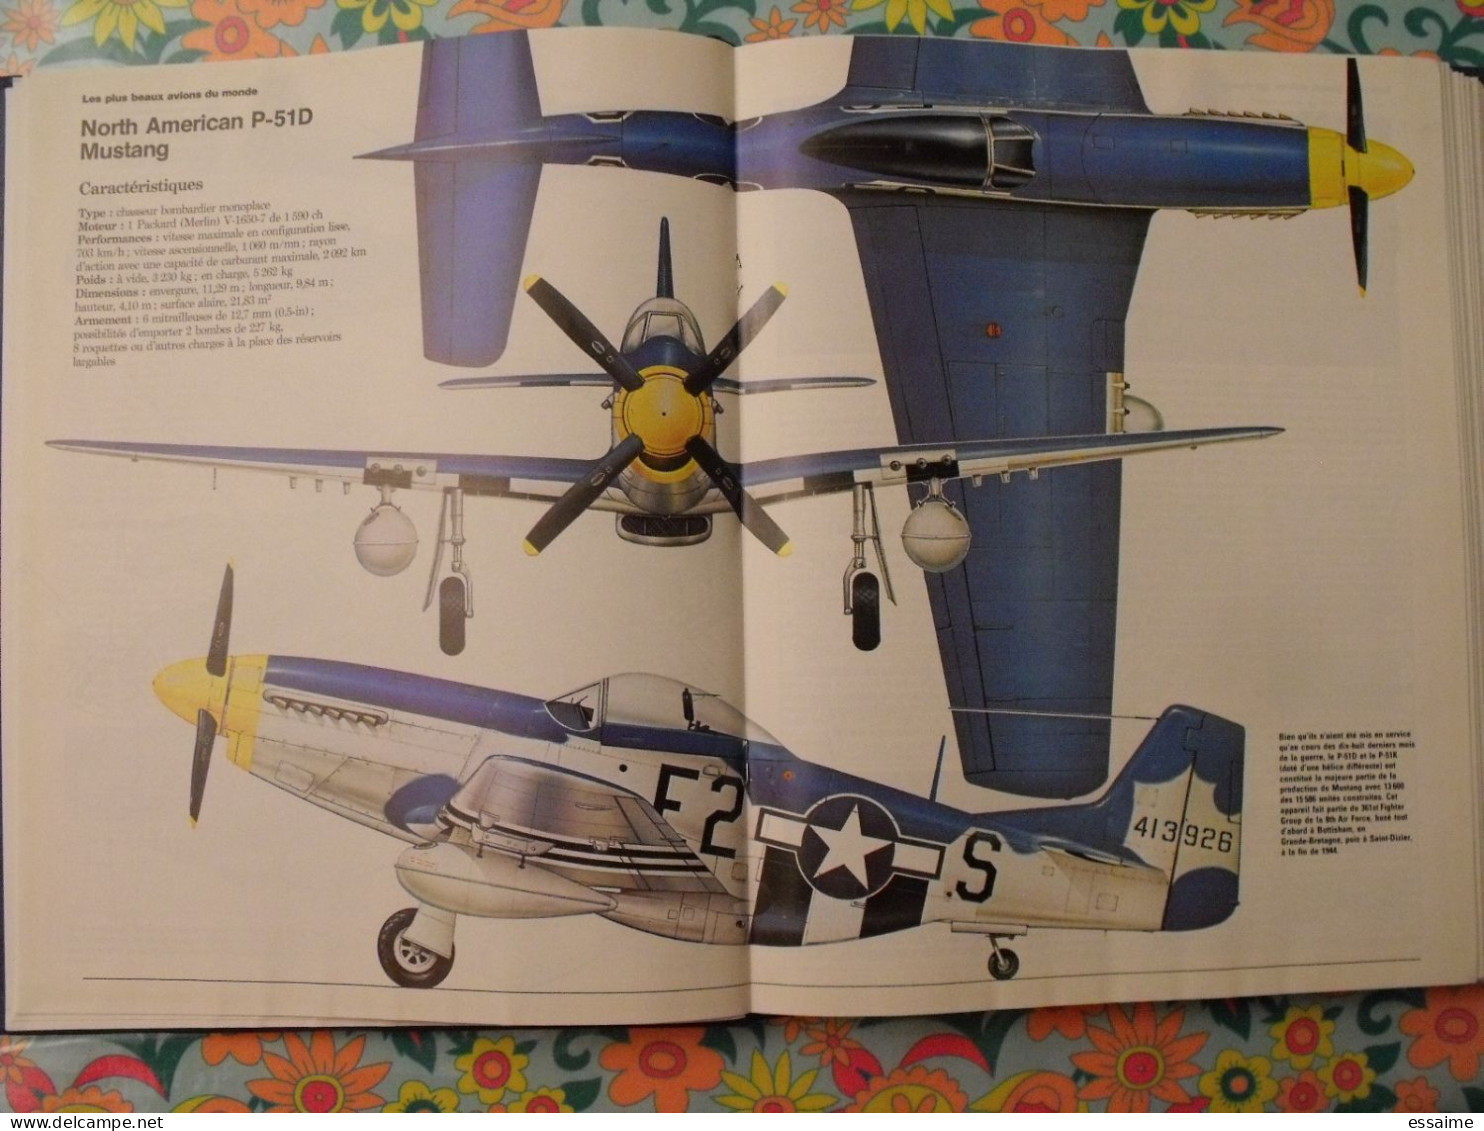 l'encyclopédie illustrée de l'aviation. volume 1. éditions Atlas 1982. contient 13 numéros